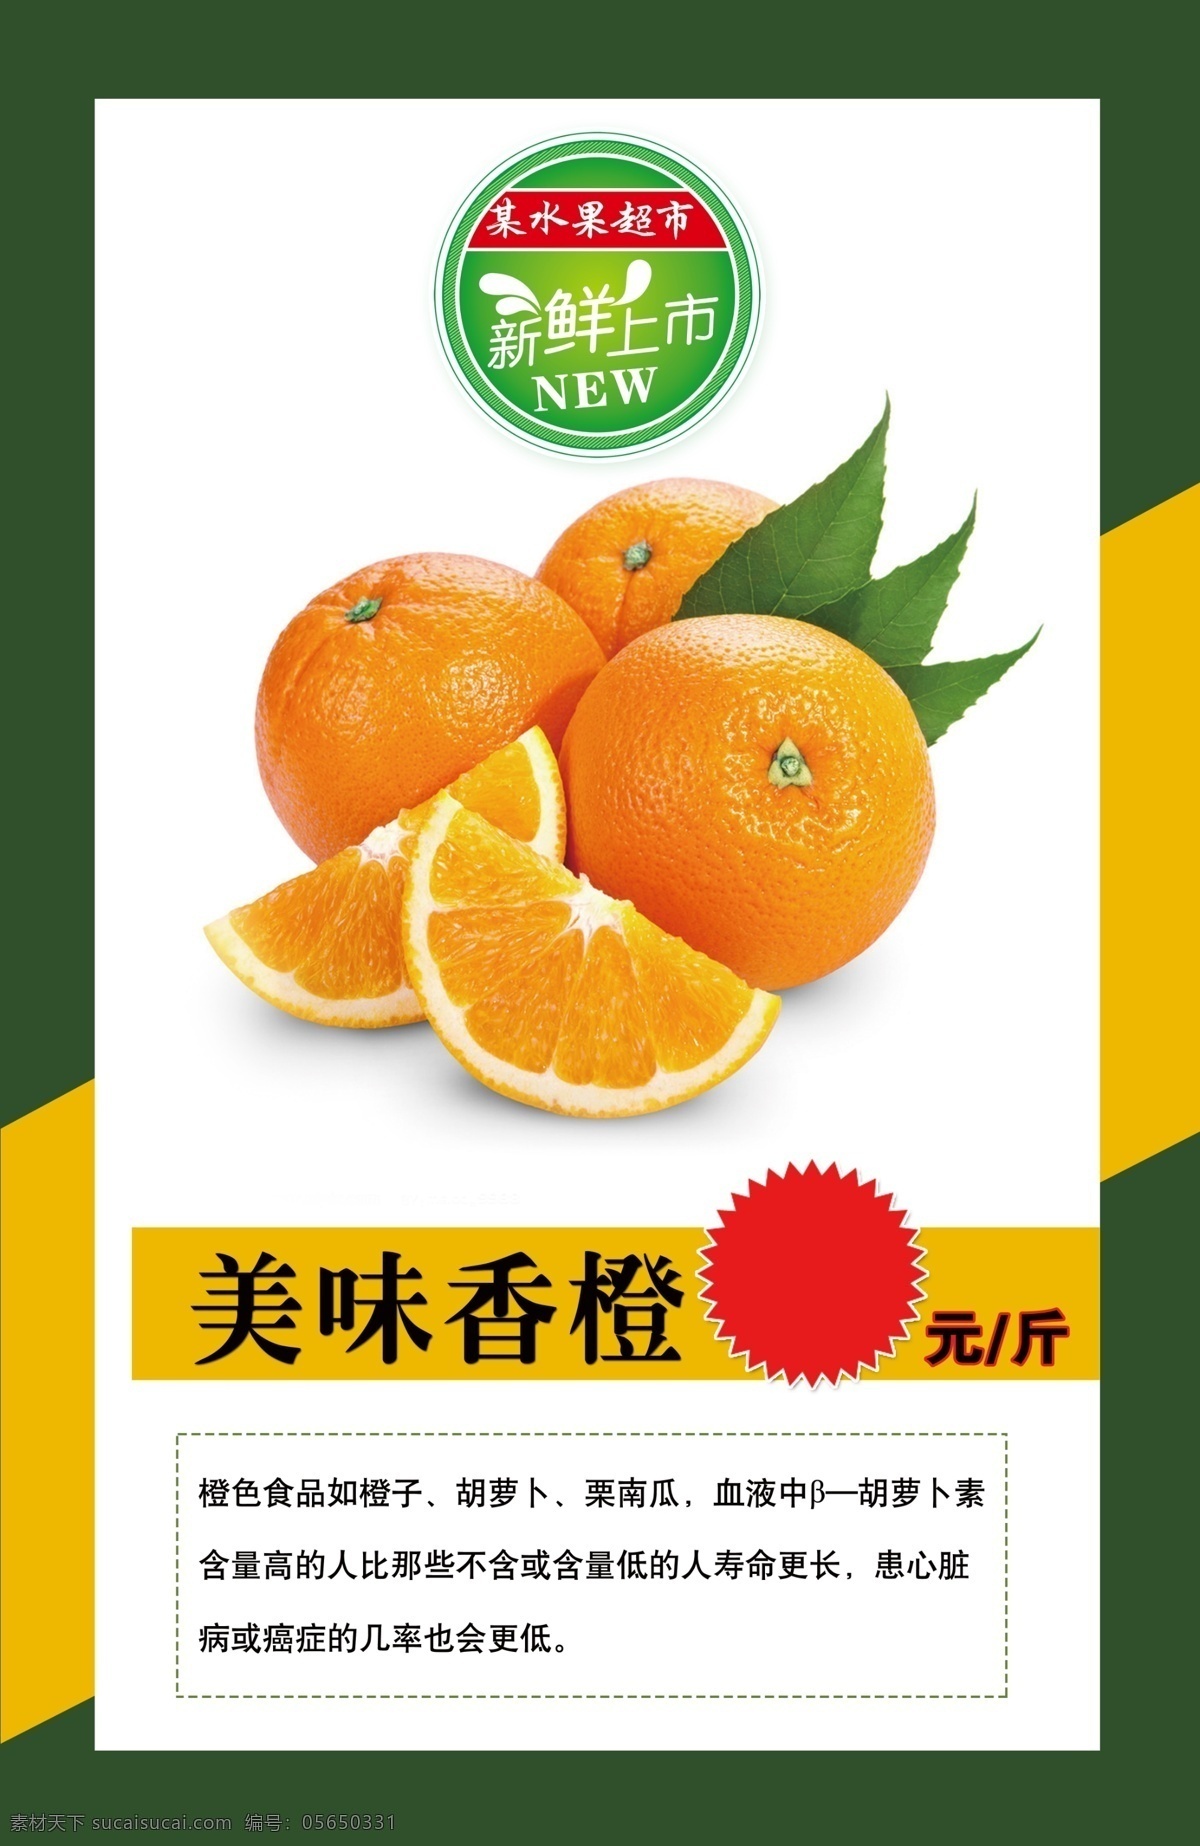 美味香橙展板 水果店 果蔬店 香橙 水果超市 超市展板